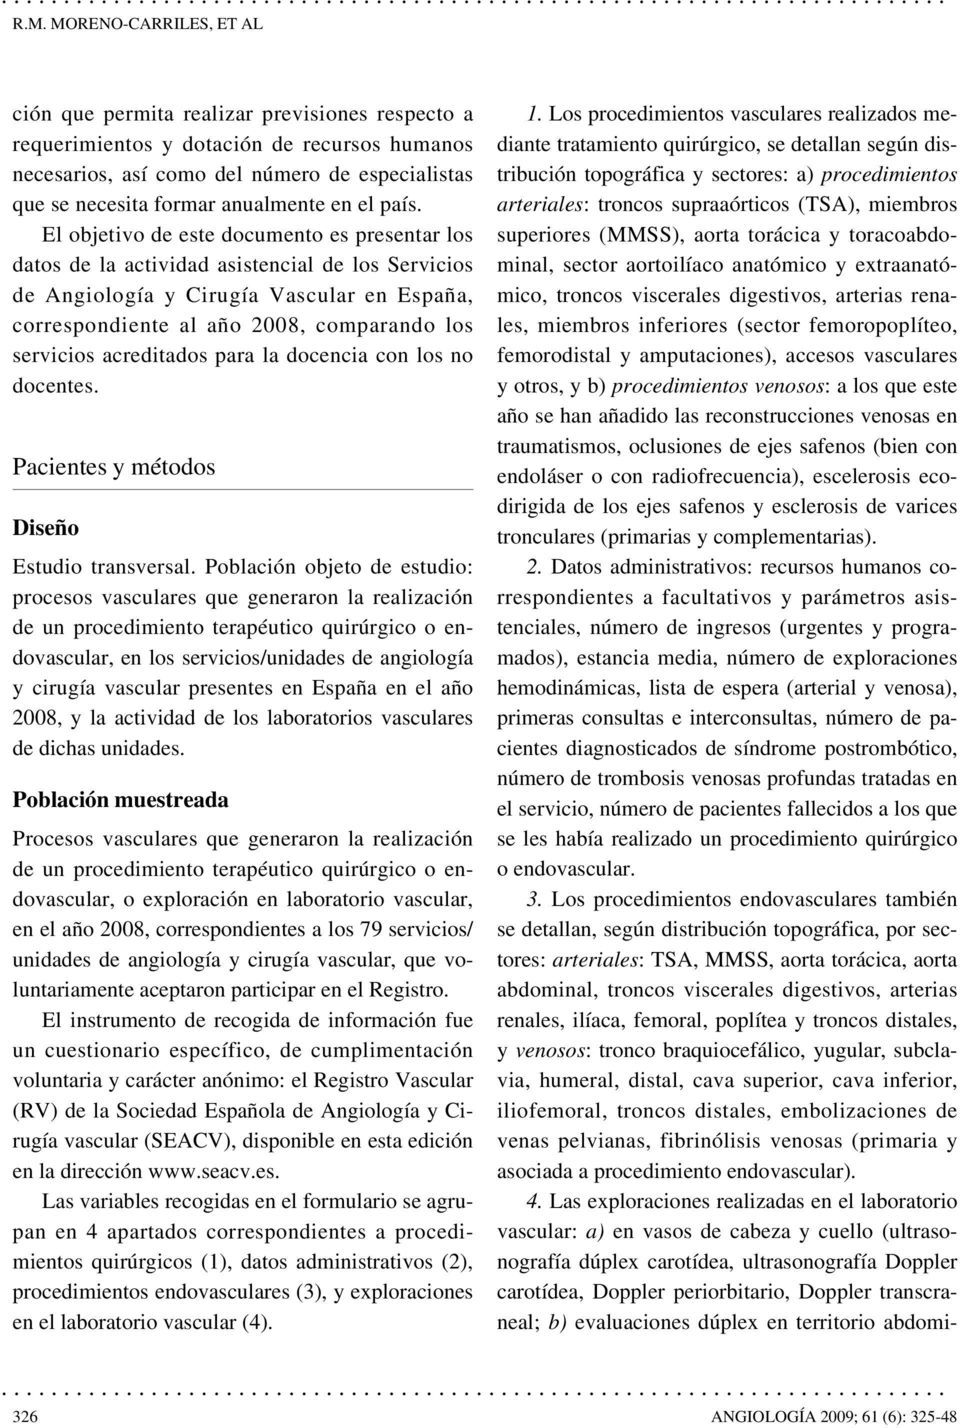 El objetivo de este documento es presentar los datos de la actividad asistencial de los Servicios de Angiología y Cirugía Vascular en España, correspondiente al año 2008, comparando los servicios